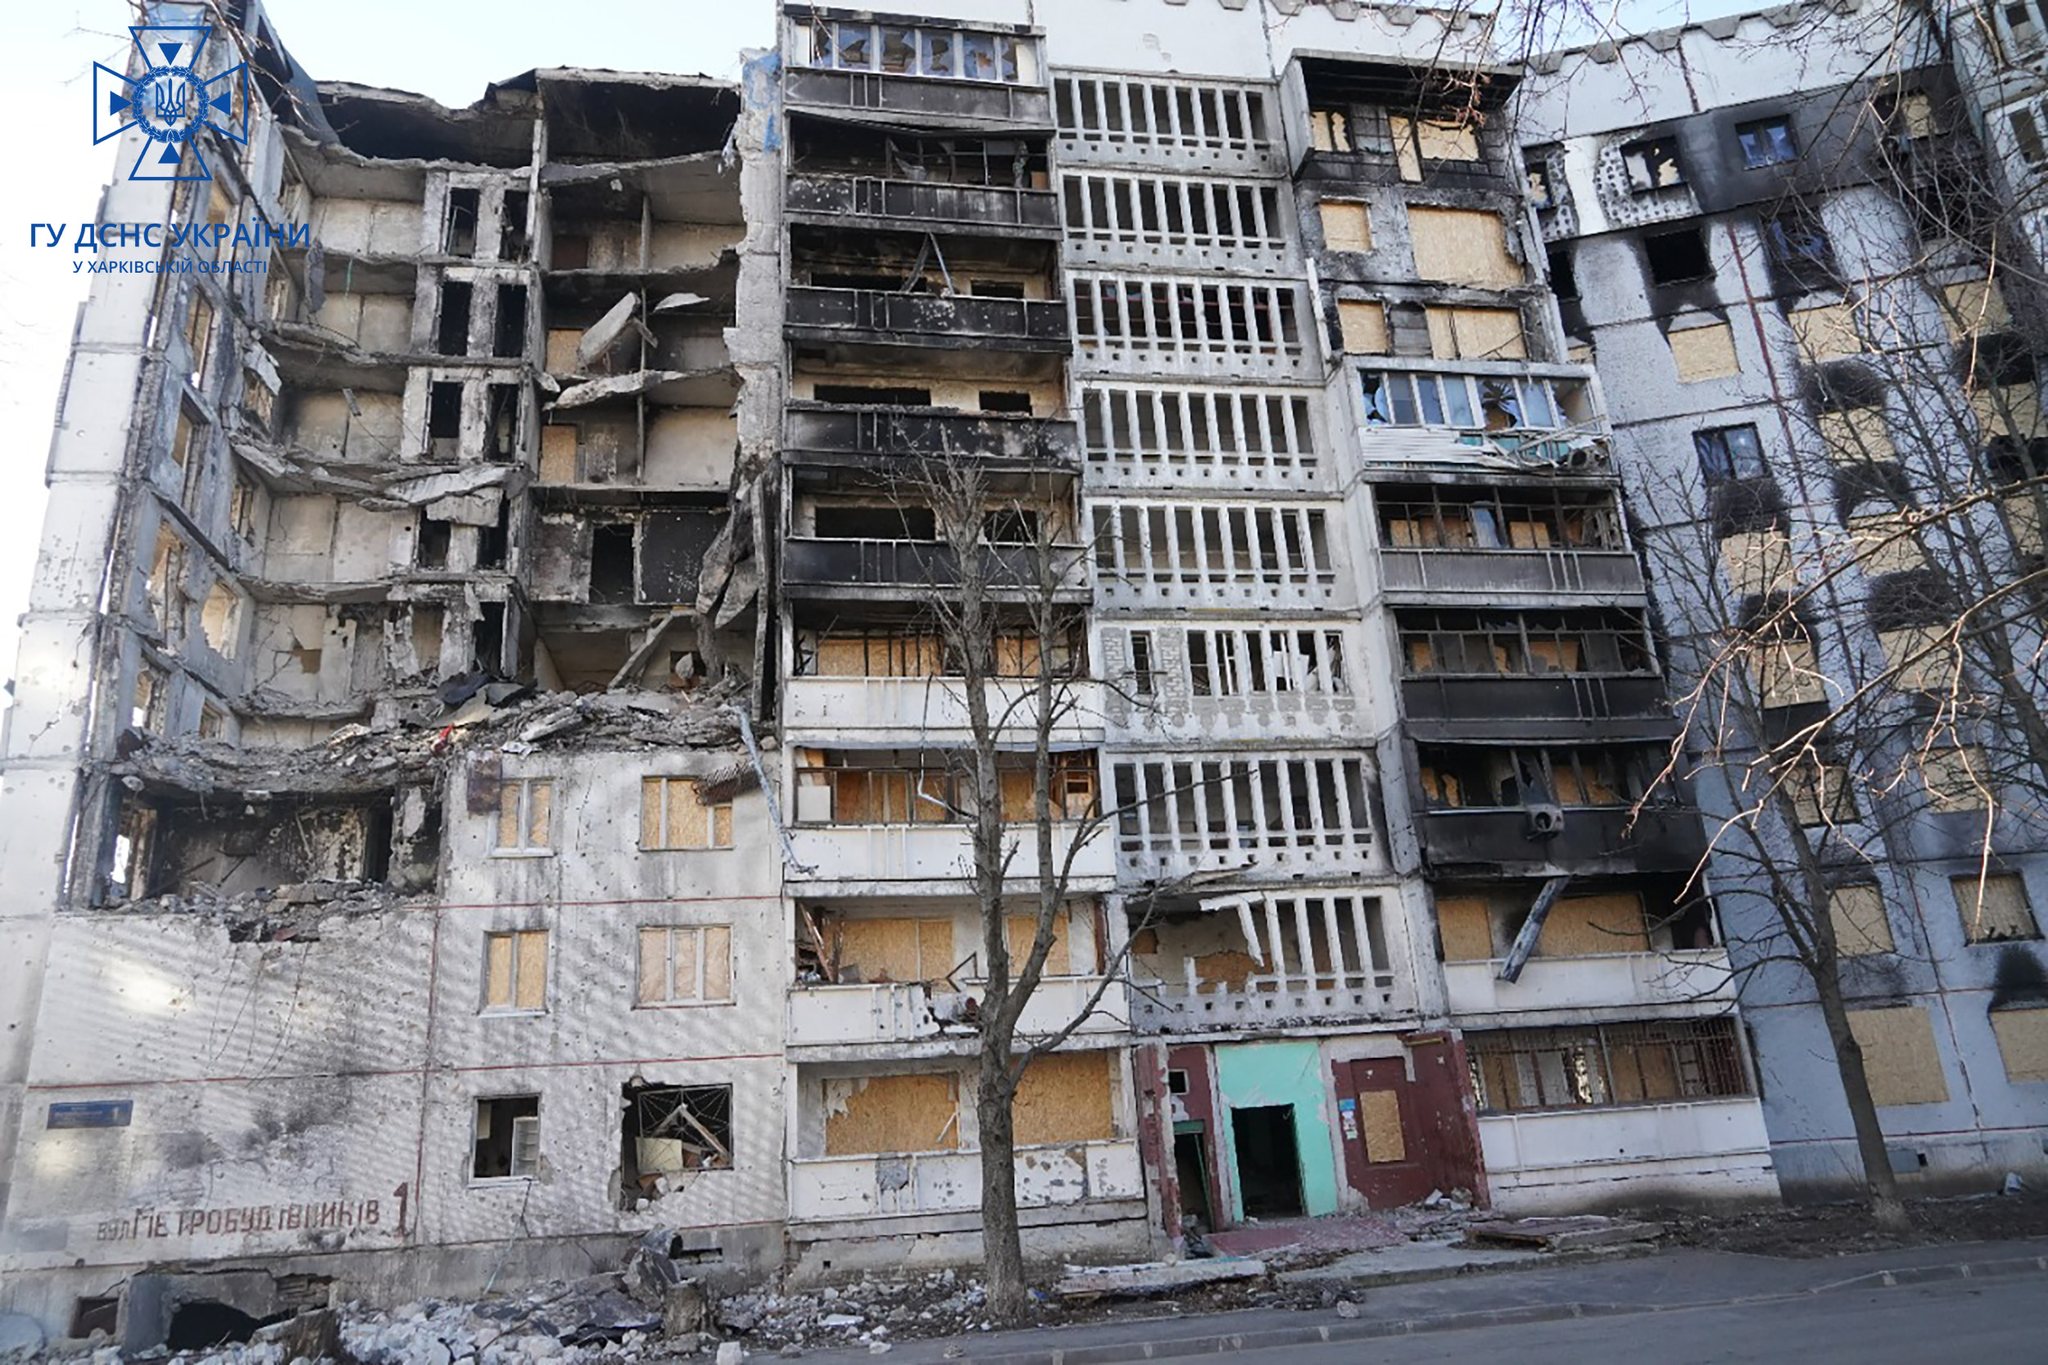  В Харькове разбирают завалы зданий 23 января для дальнейшего ремонта 9